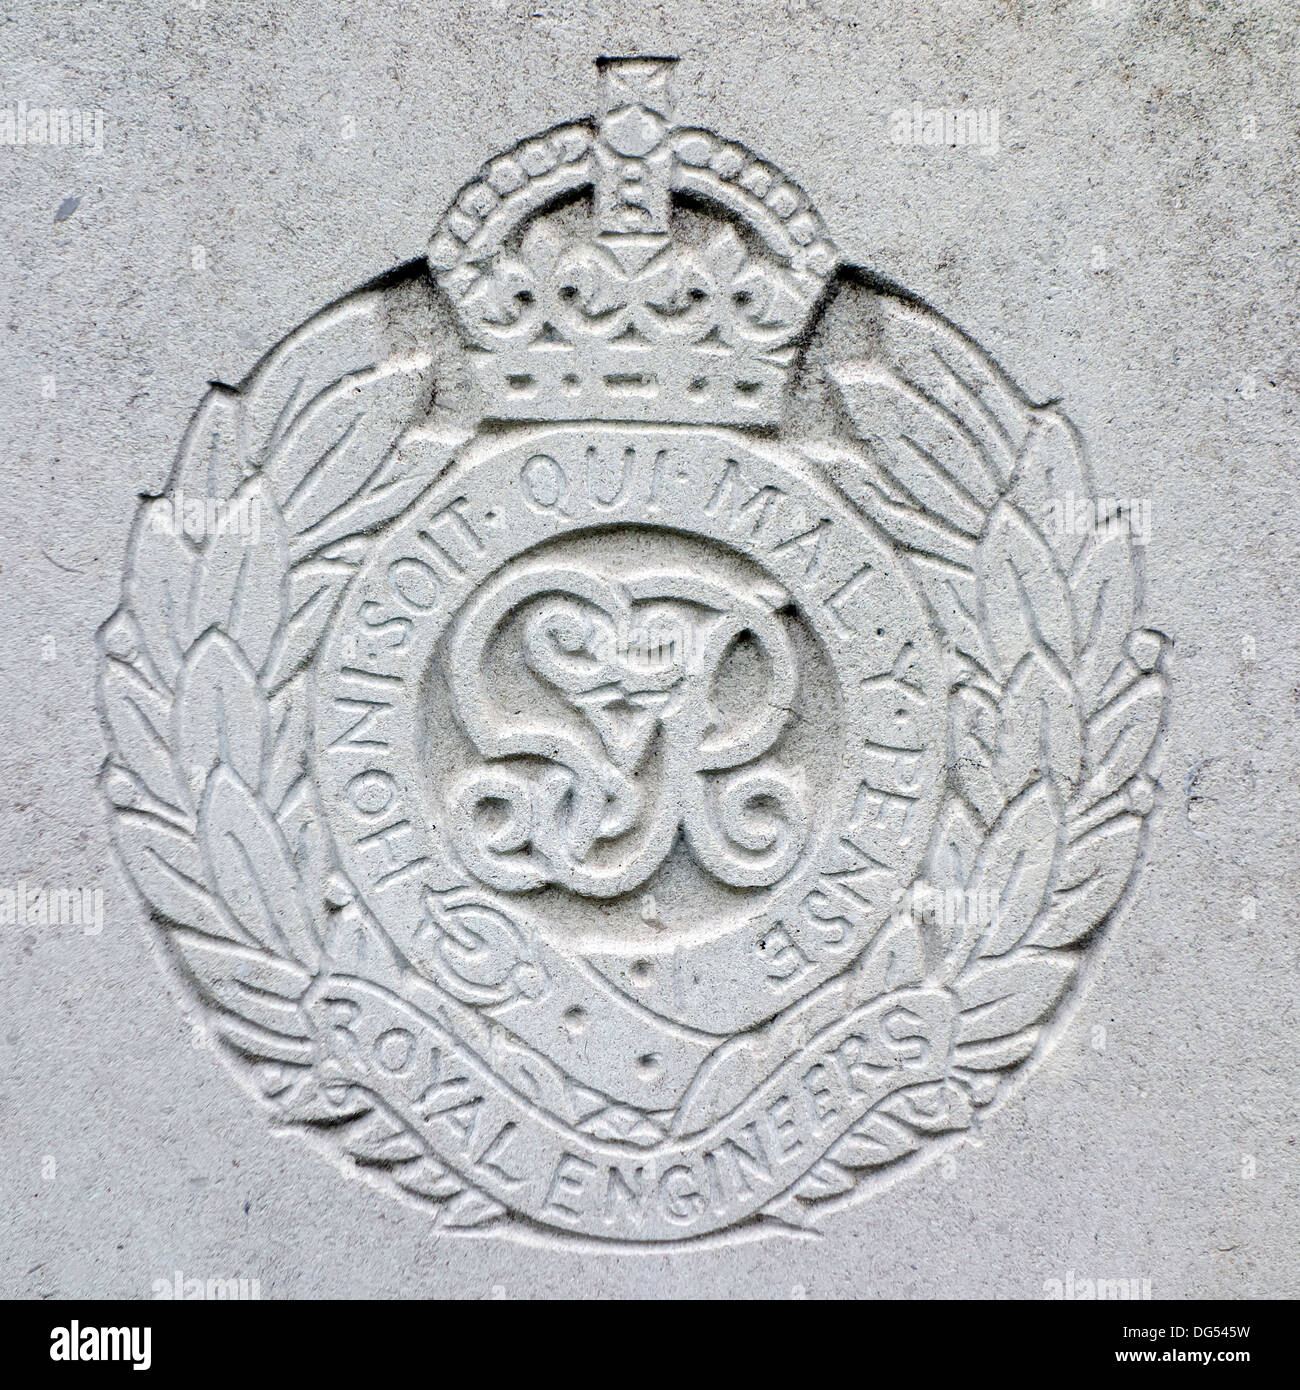 Königliche Ingenieure Regiments-Abzeichen auf Grab, Friedhof der Commonwealth War Graves Commission für Erster Weltkrieg britische Soldaten Stockfoto